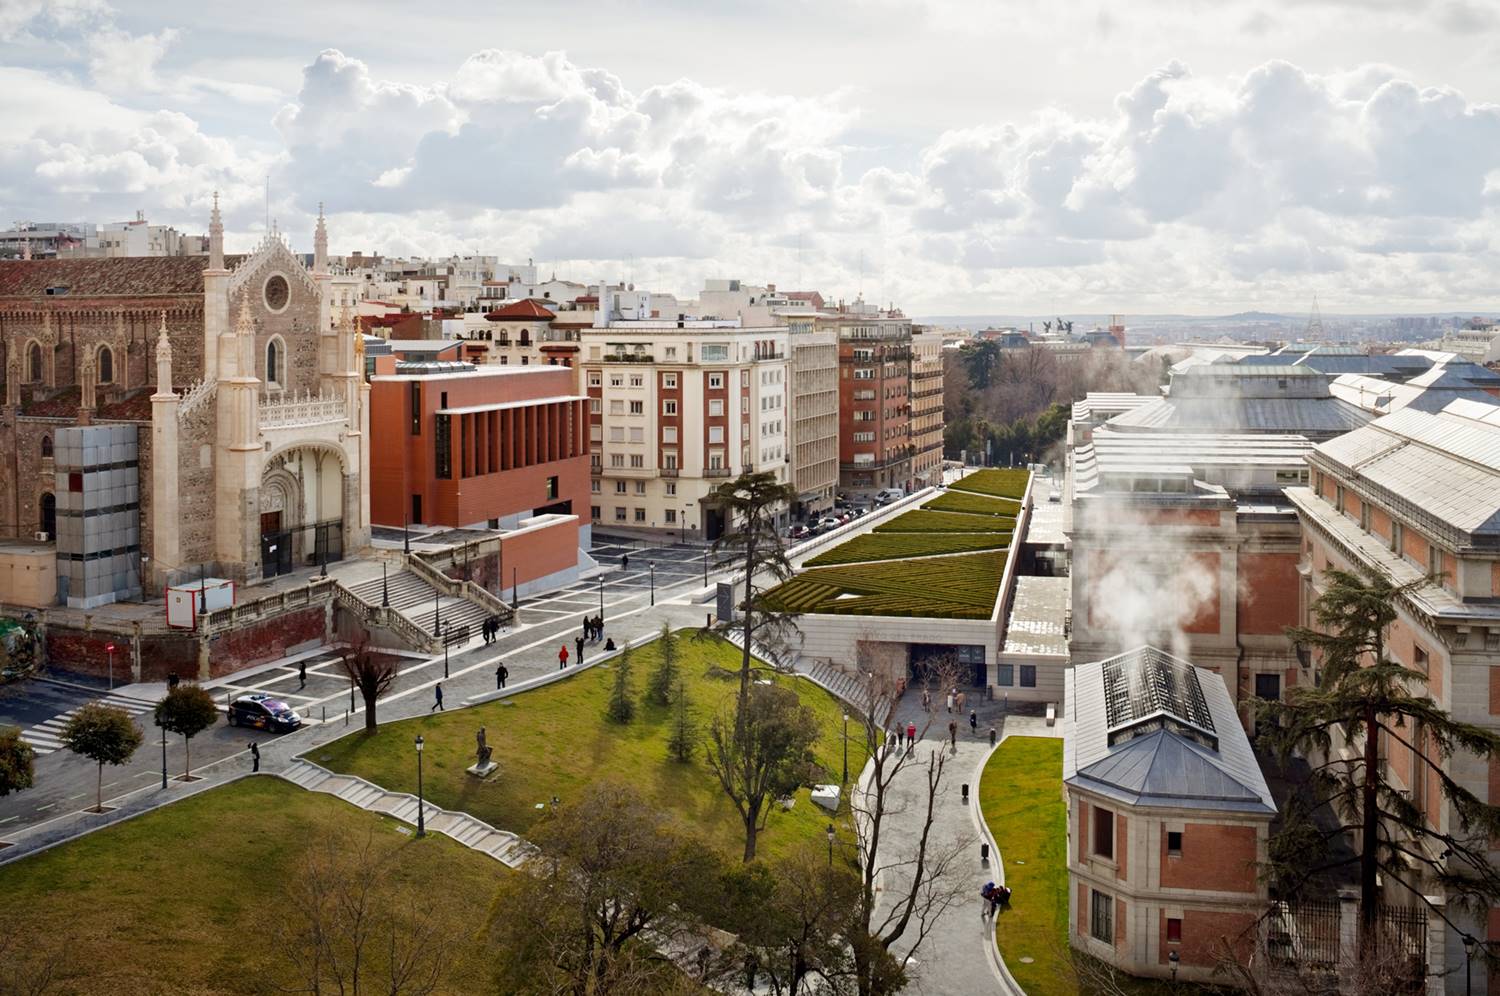  Museo del Prado, con el edificio Villanueva (dcha.) y el edificio Jerónimos (izq.) obra de Rafael Moneo.